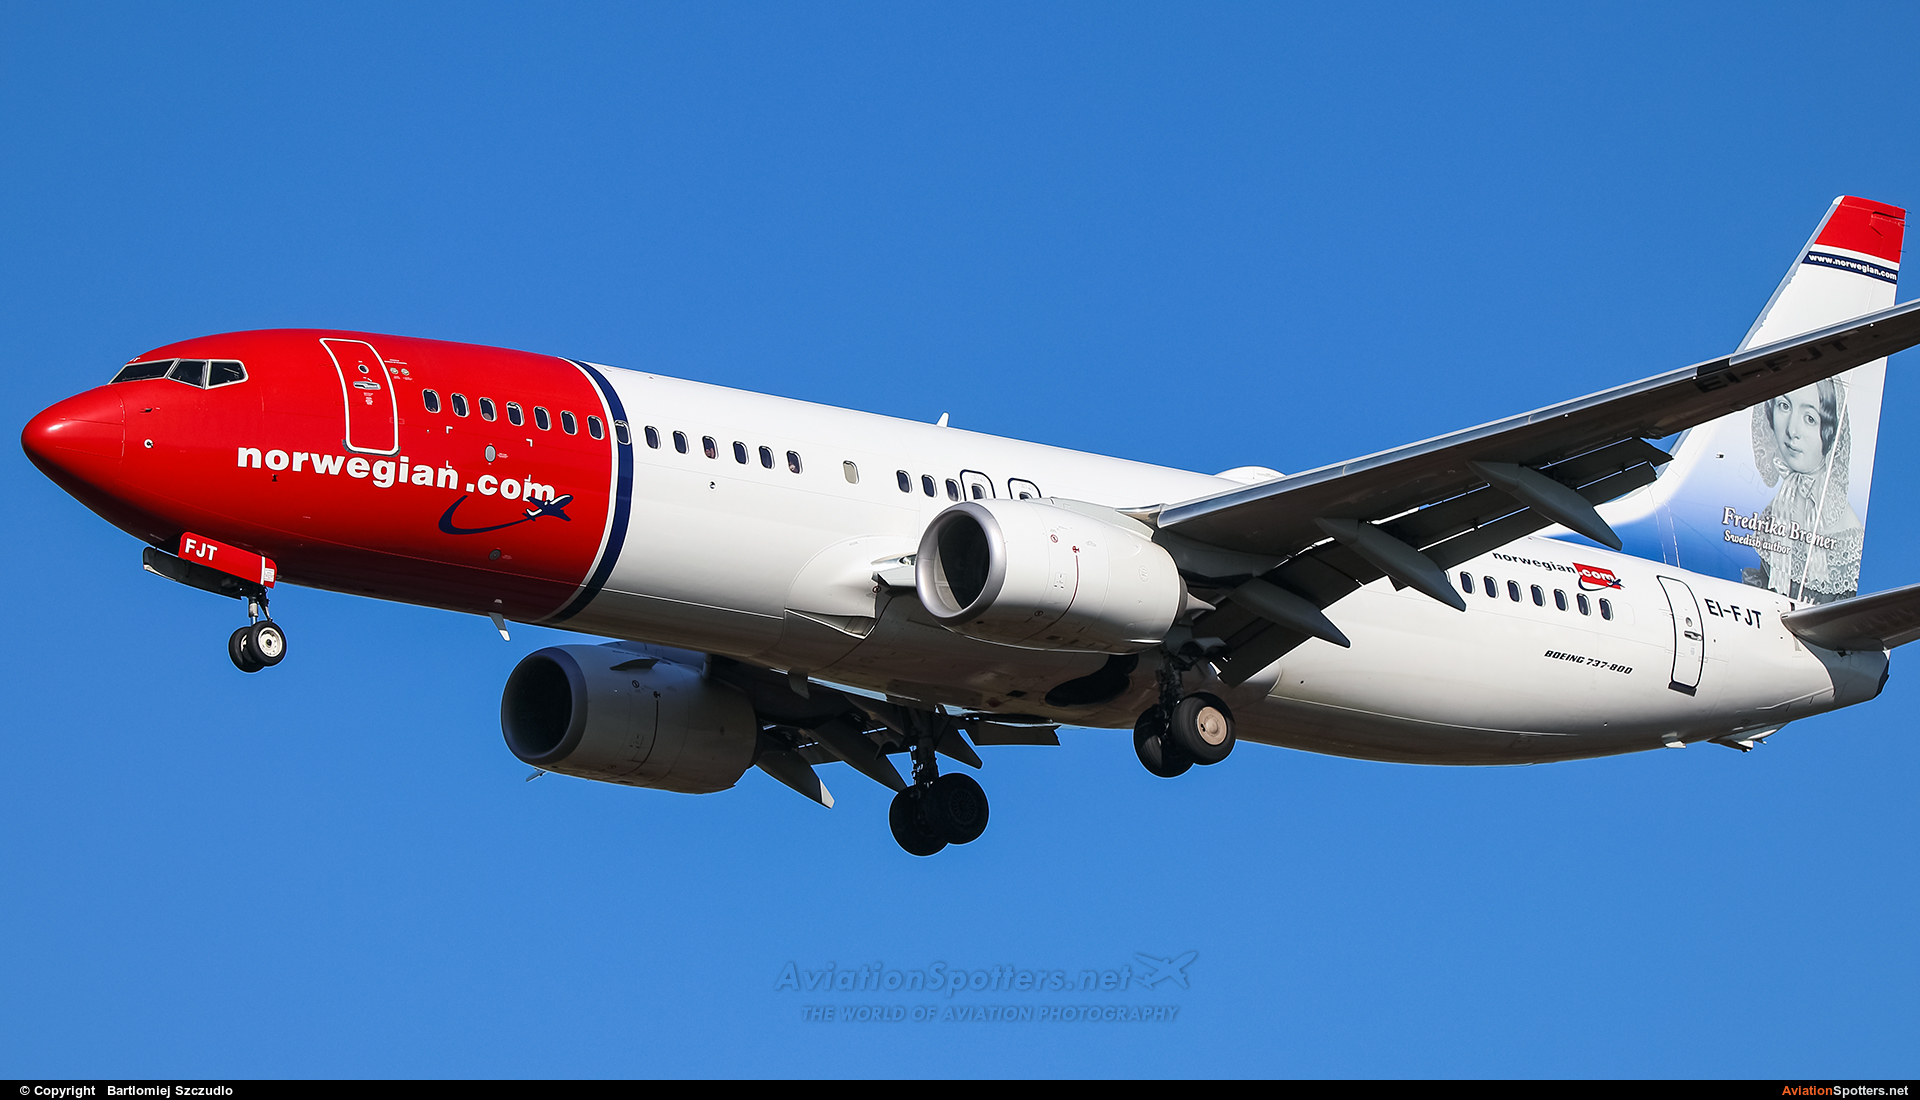 Norwegian Air Shuttle  -  737-800  (EI-FJT) By Bartlomiej Szczudlo  (BartekSzczudlo)